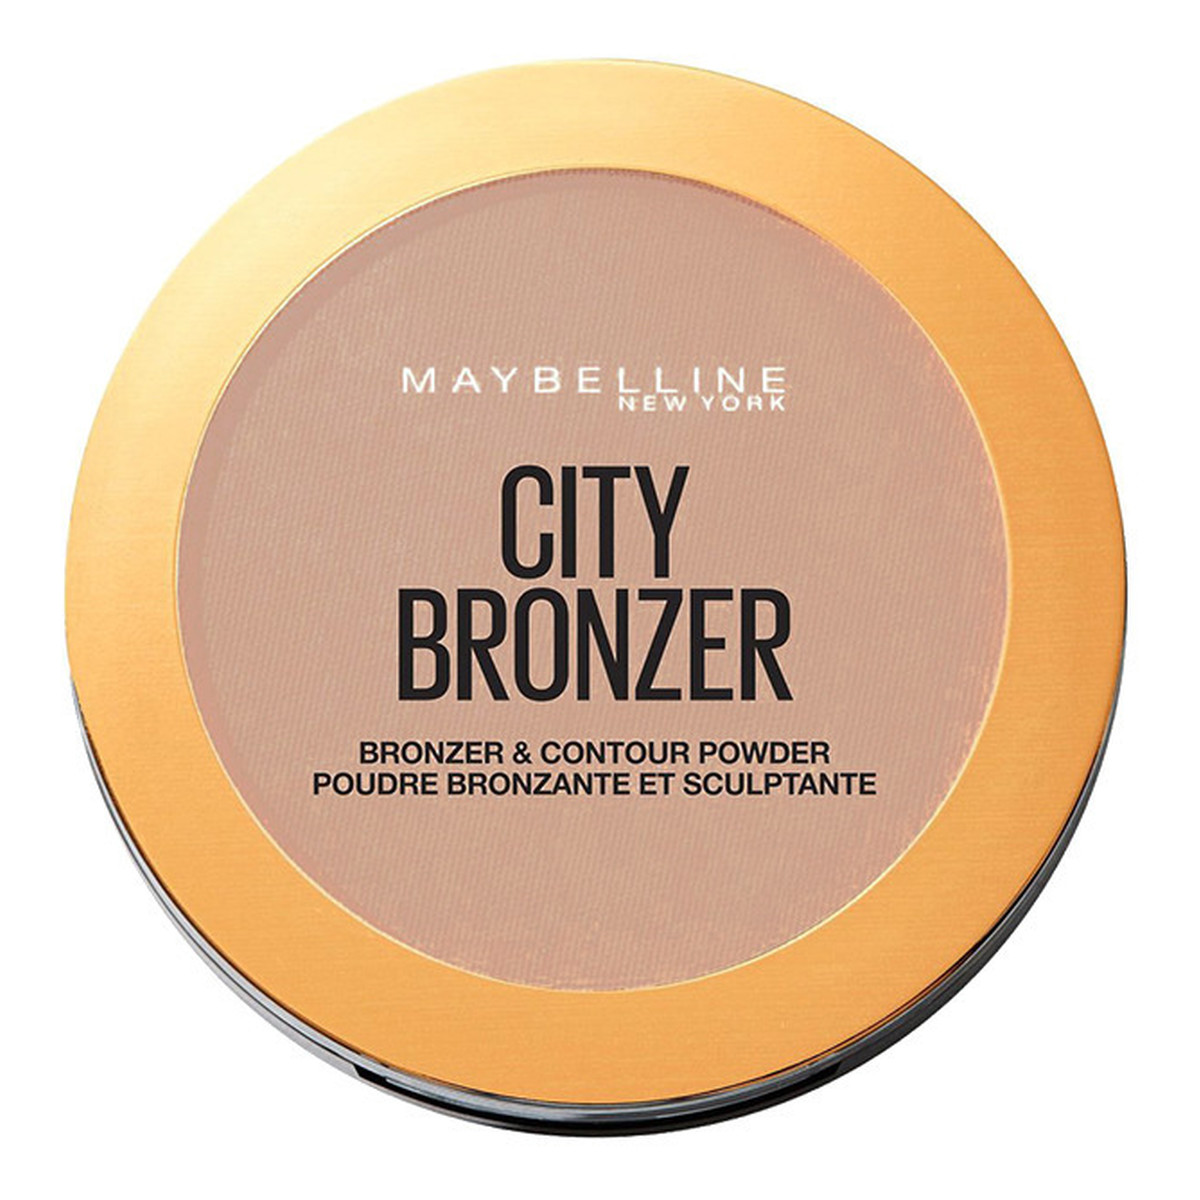 Maybelline City Bronzer puder brązujący do twarzy 8g